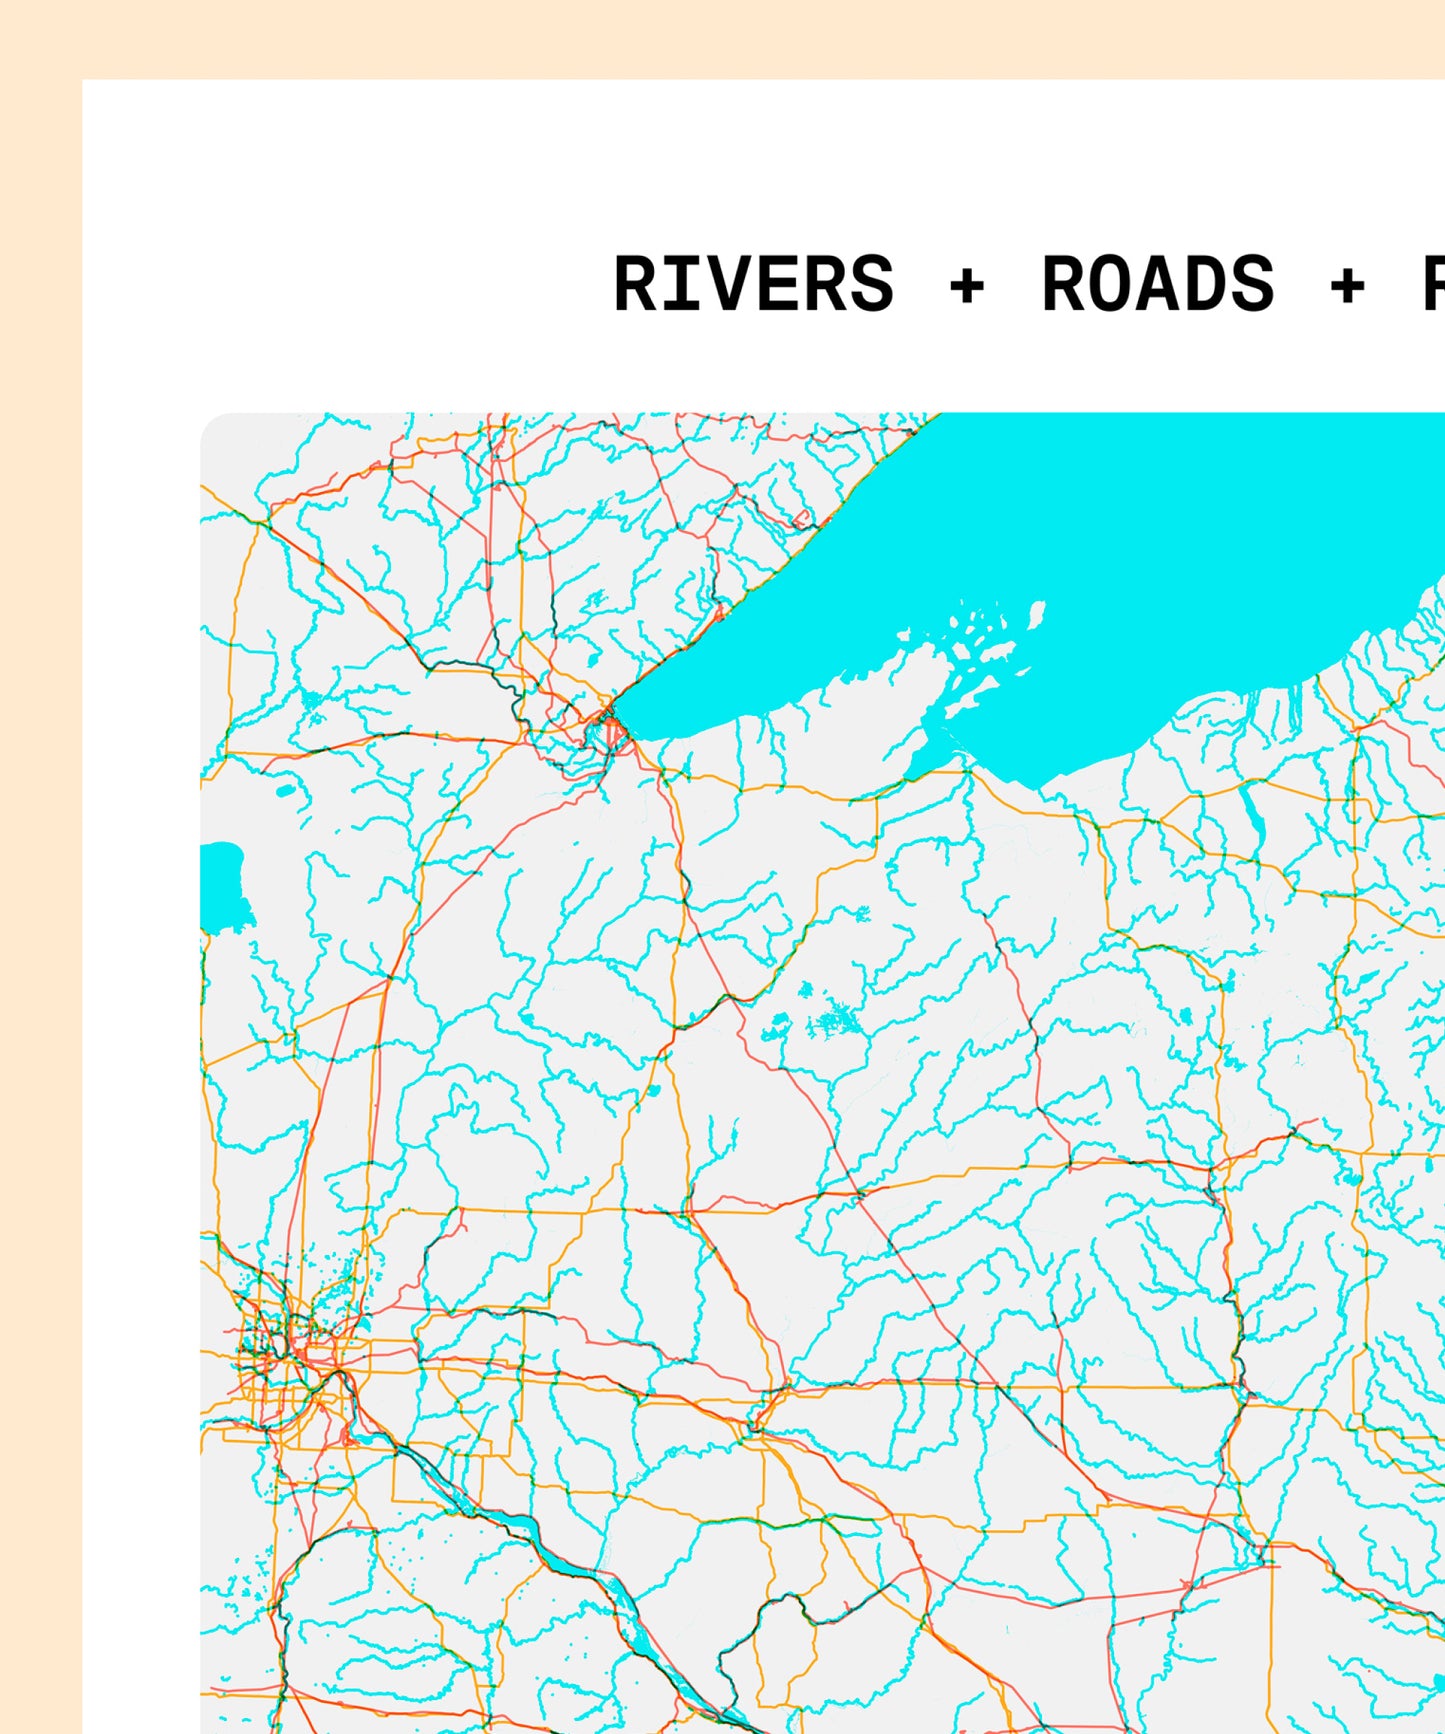 Rivers + Roads + Rail